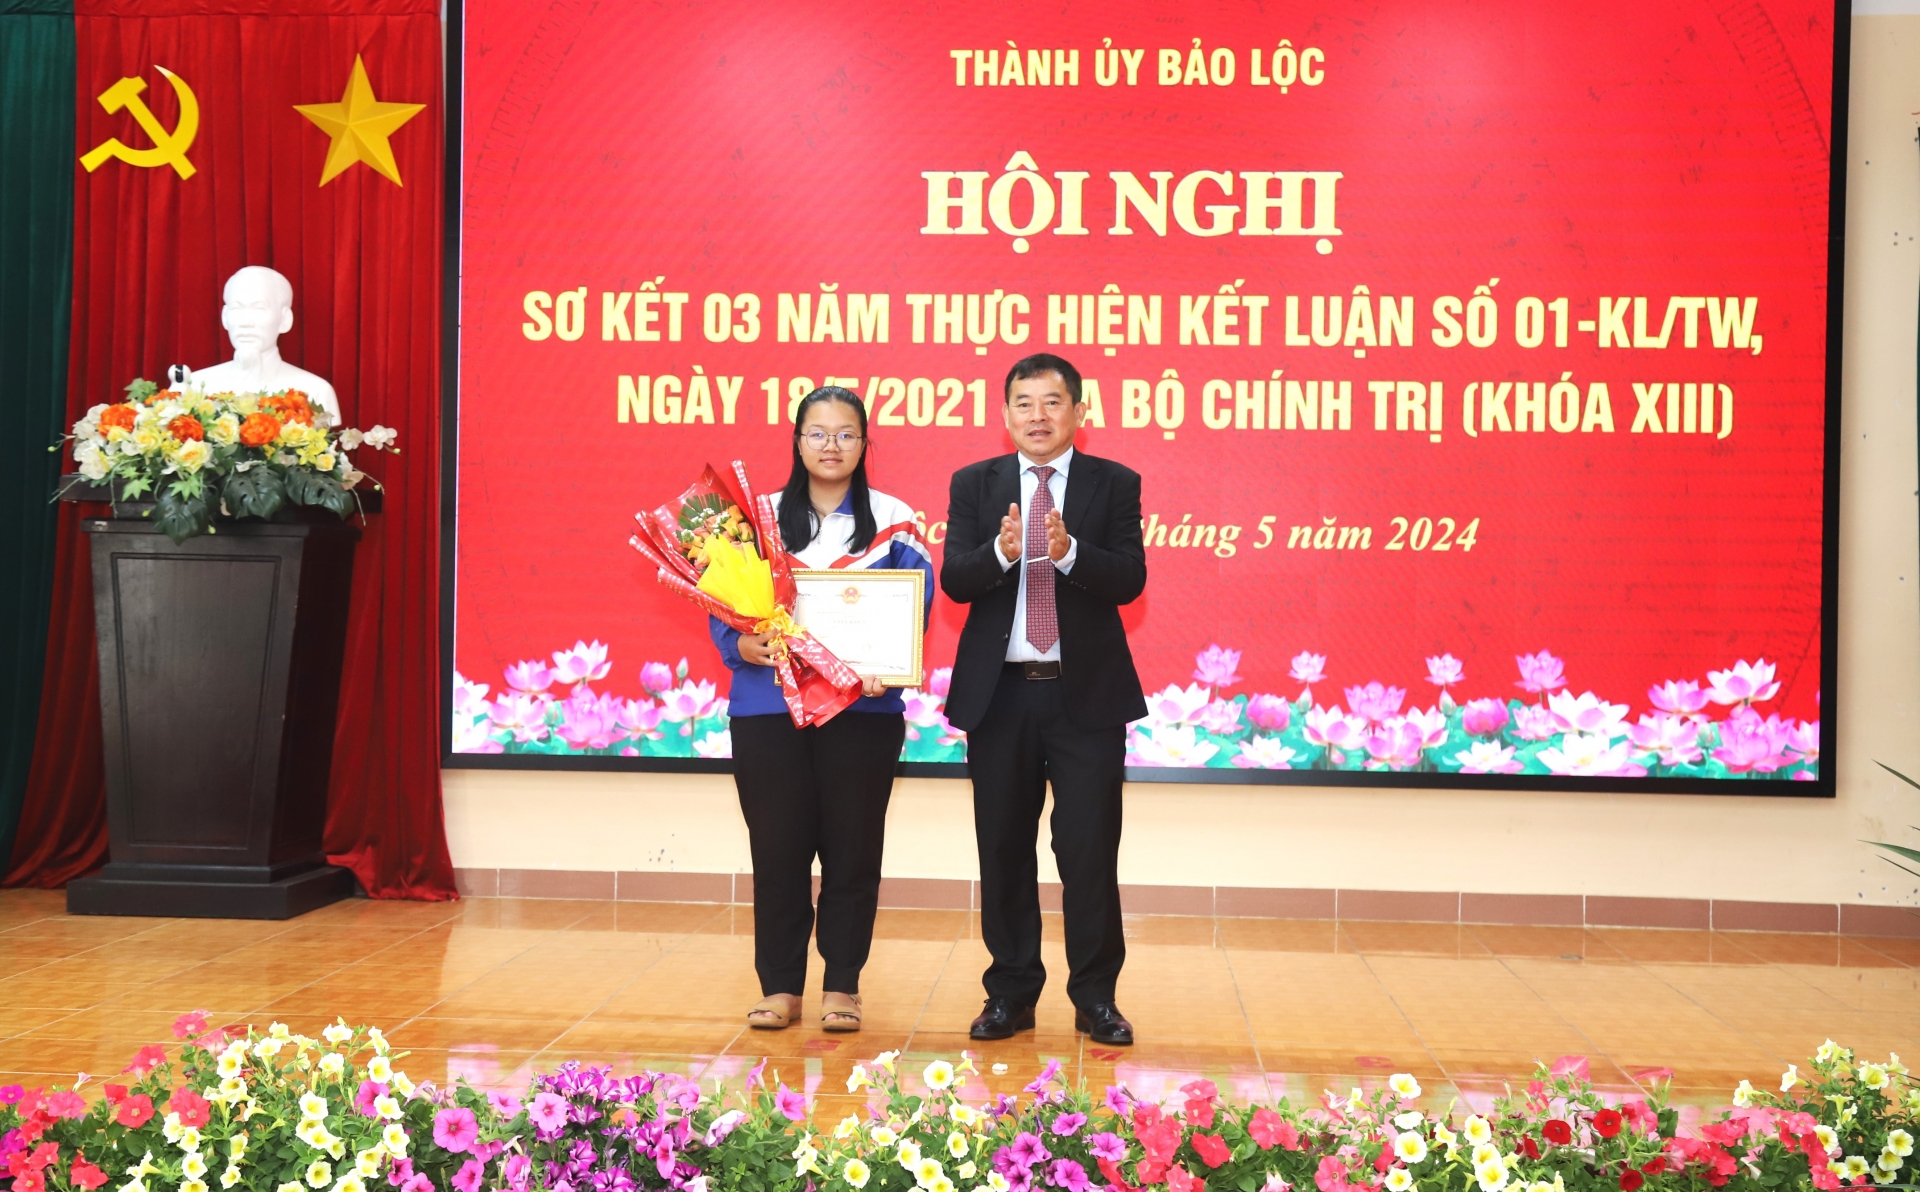 Bảo Lộc: Khen thưởng đột xuất học sinh đoạt giải nhất Tin học quốc gia